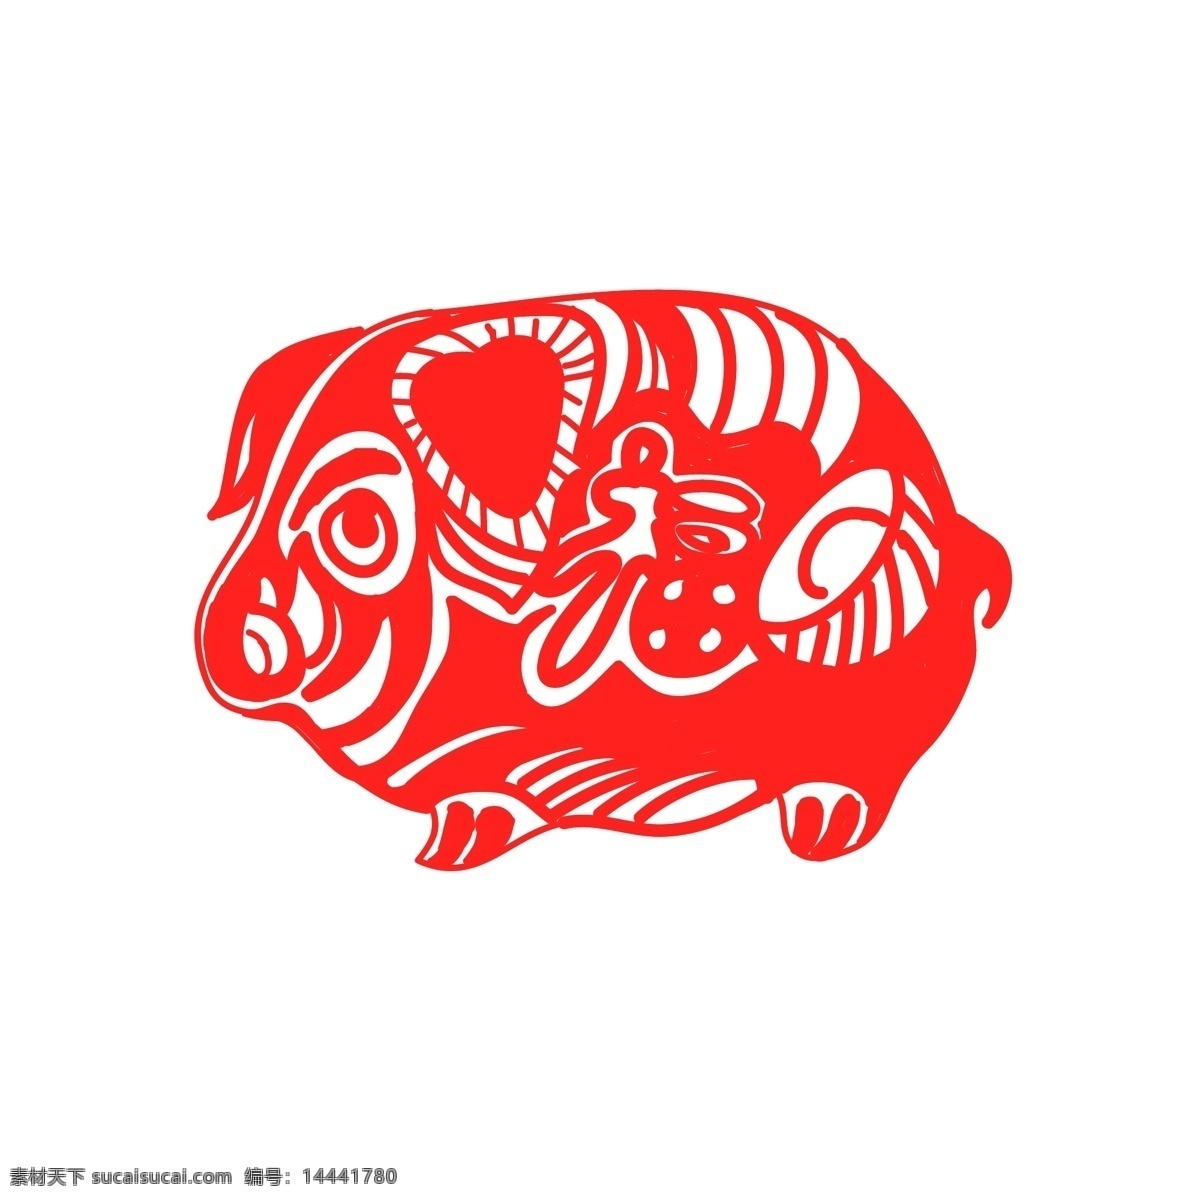 猪年 剪纸 创意 猪 矢量 商用 元素 红色猪 窗花 矢量小猪 猪元素 猪年大吉 创意剪纸猪 小猪剪纸 2019猪 装饰猪